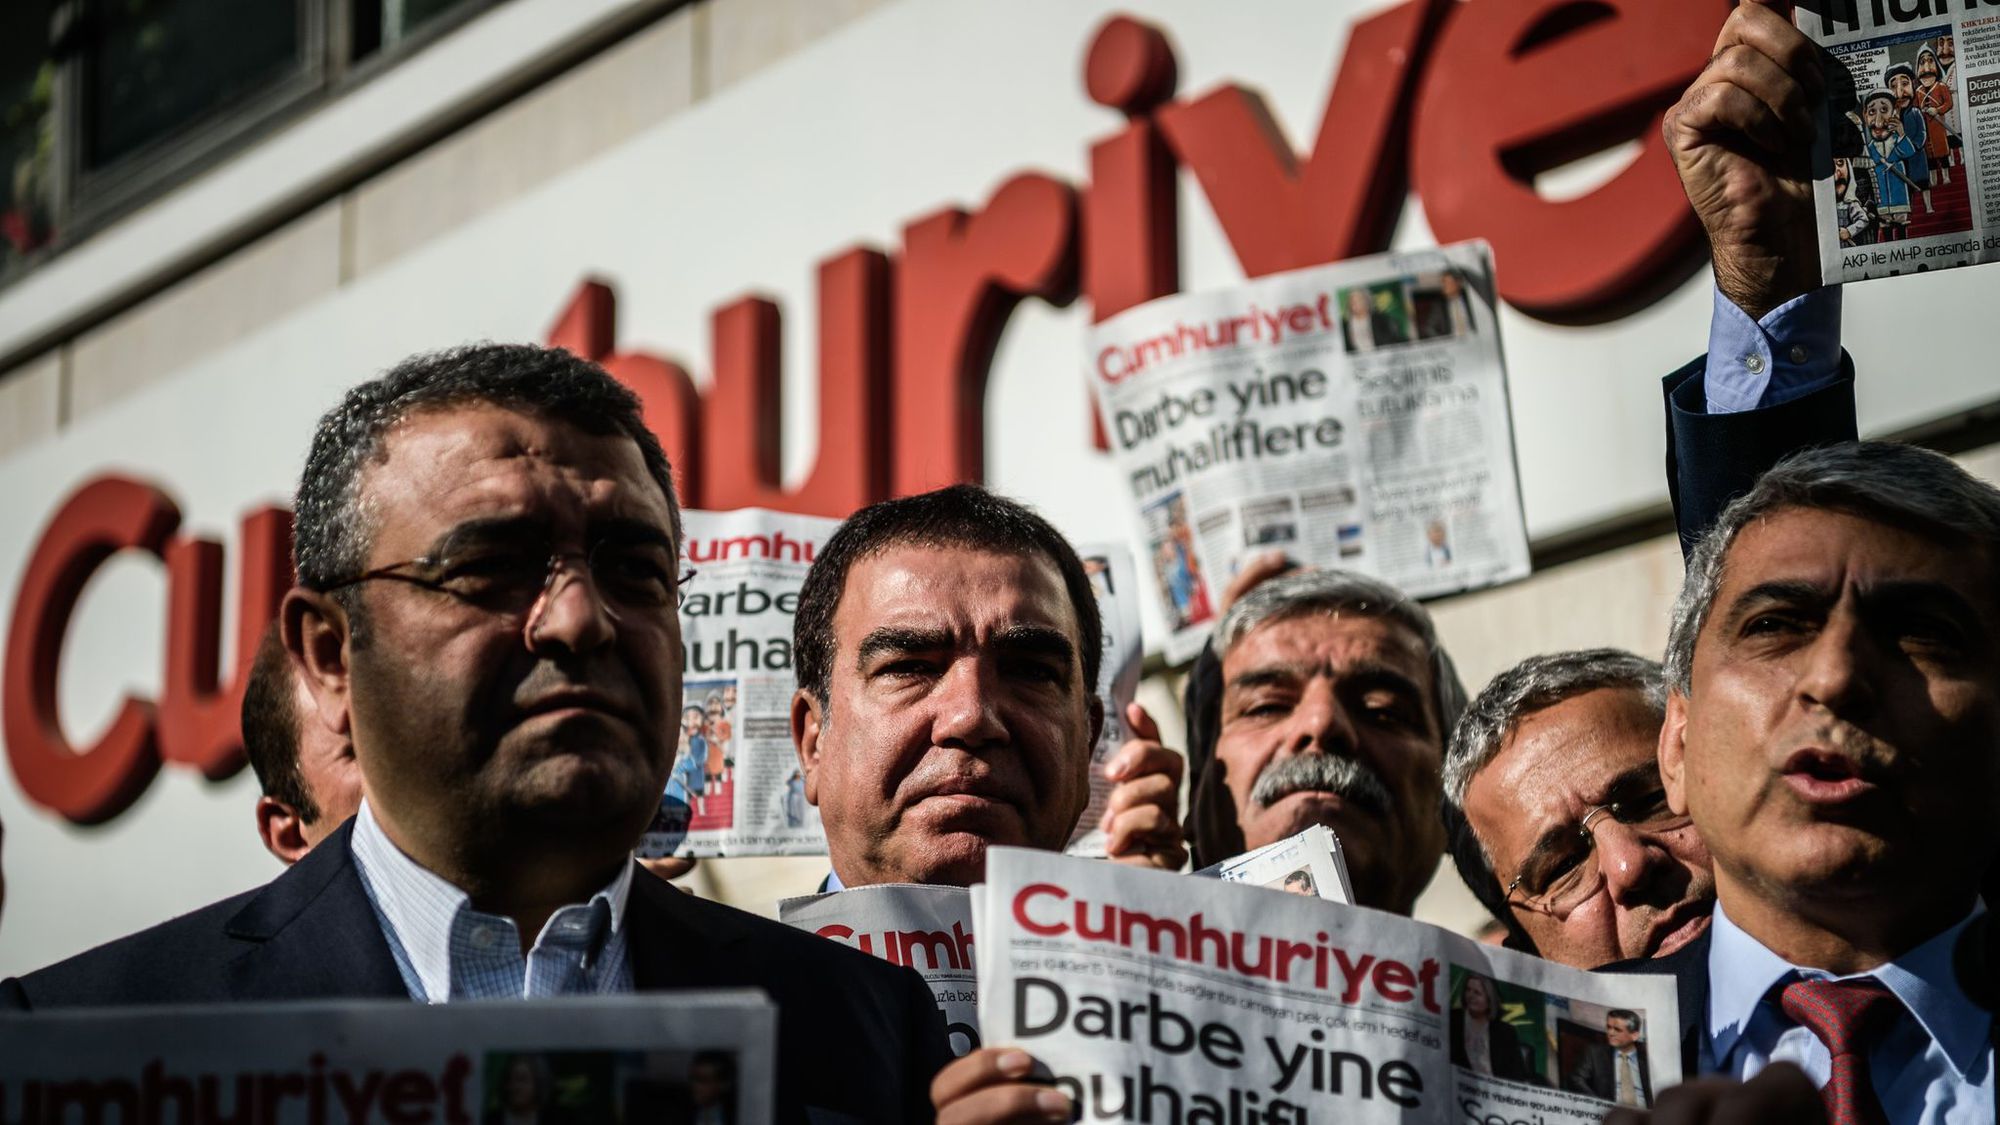 En Turquie, les colonnes des journalistes de Cumhuriyet arrêtés restent vides symboliquement